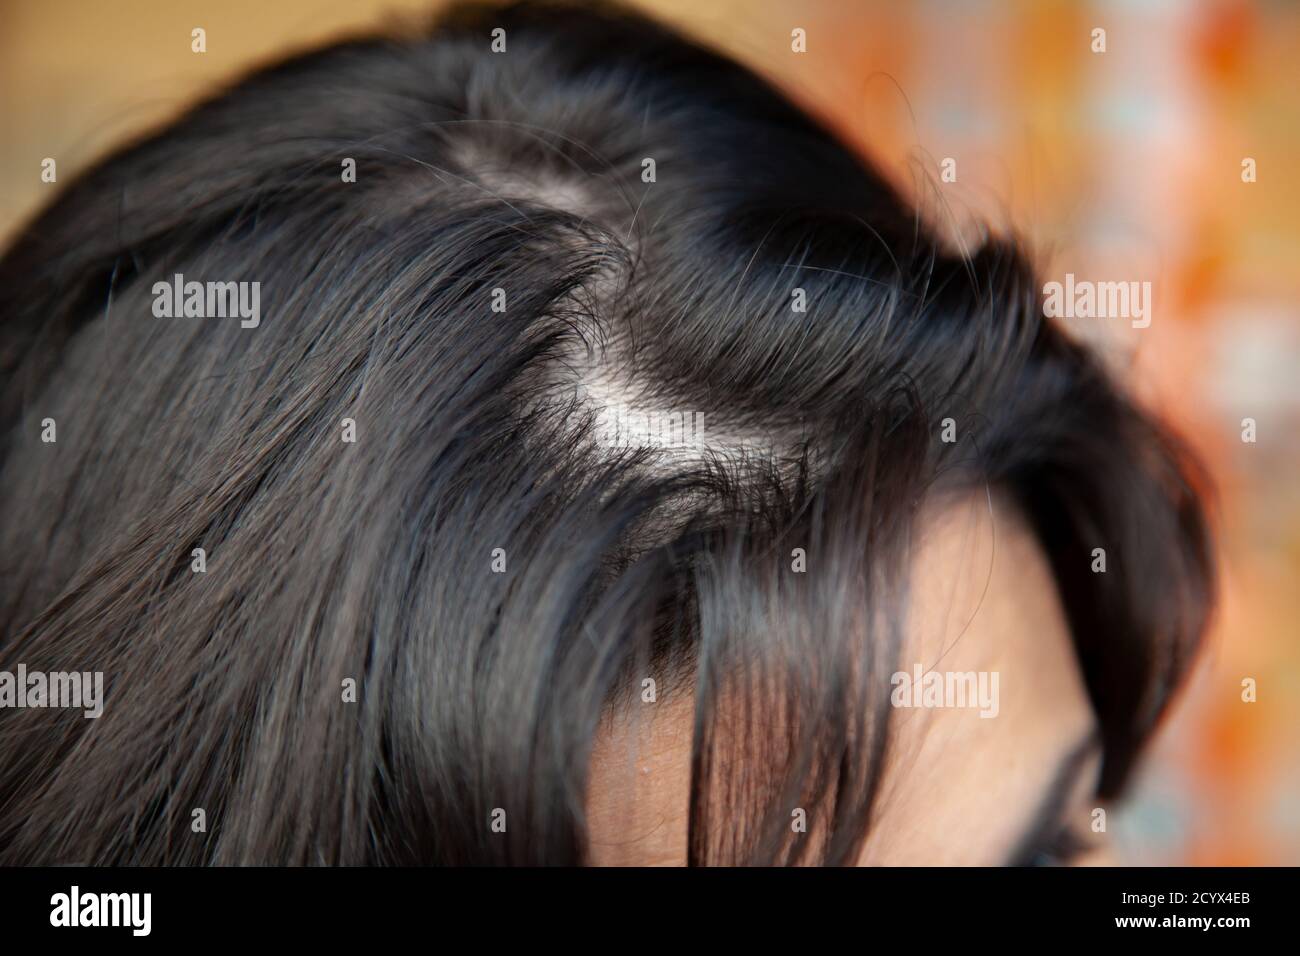 Frau zeigt dünner werdendes Haar in der Nähe der Wurzel mit öligen Haarproblemen. Haarausfall kann mehrere Faktoren haben, einschließlich Genetik, Pathologien und Schwangerschaft. Stockfoto